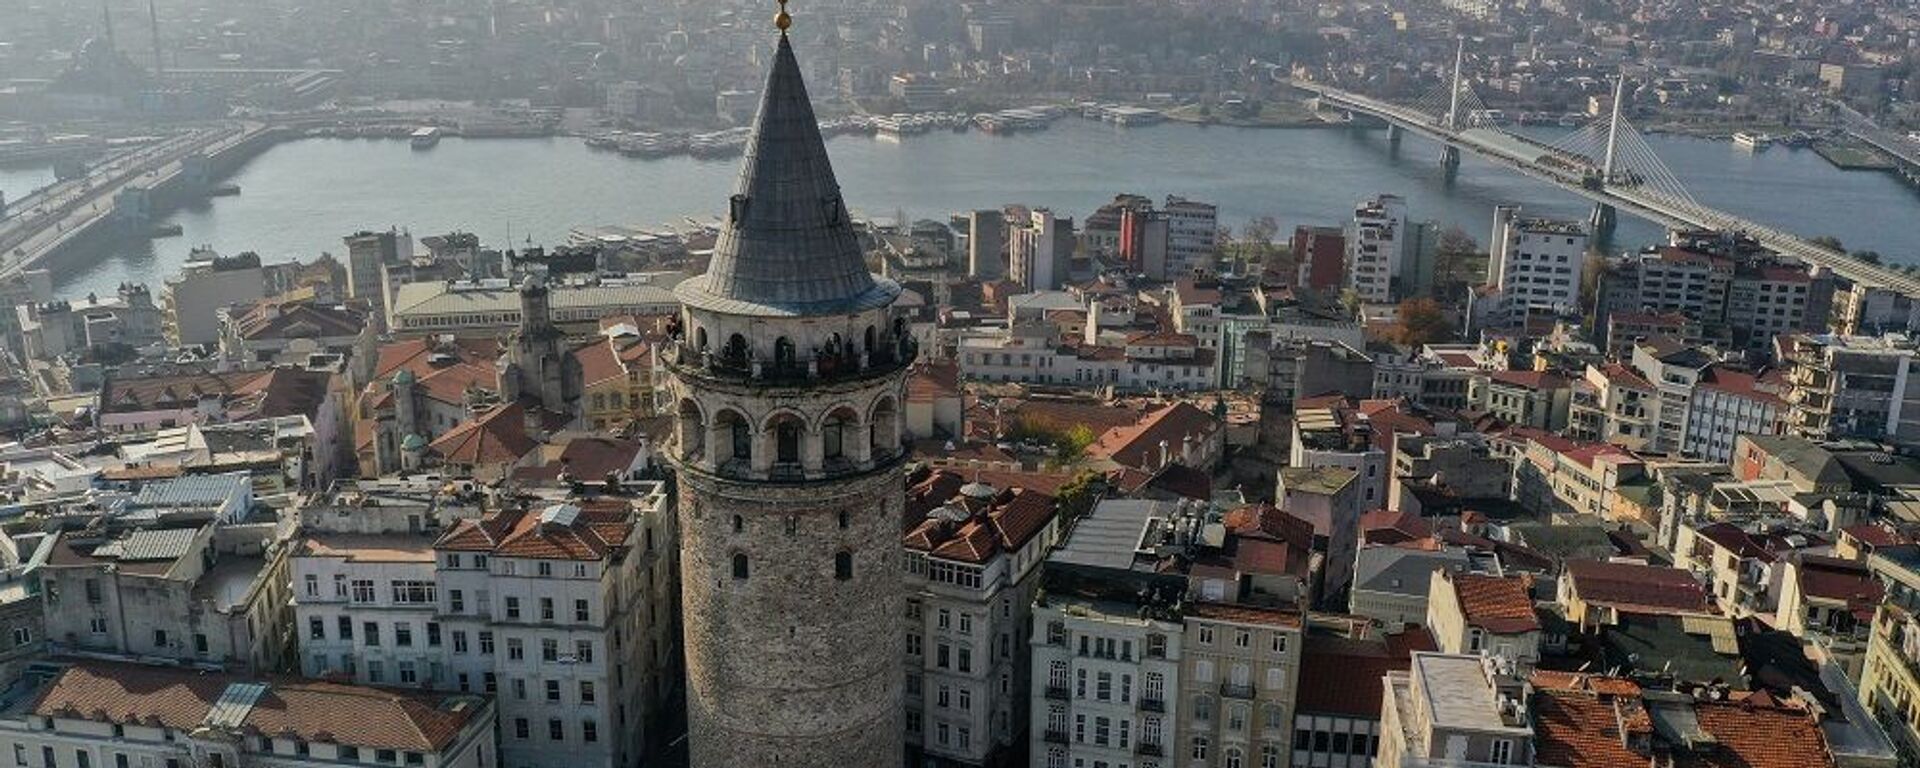 İstanbul, Galata Kulesi - Sputnik Türkiye, 1920, 01.12.2021